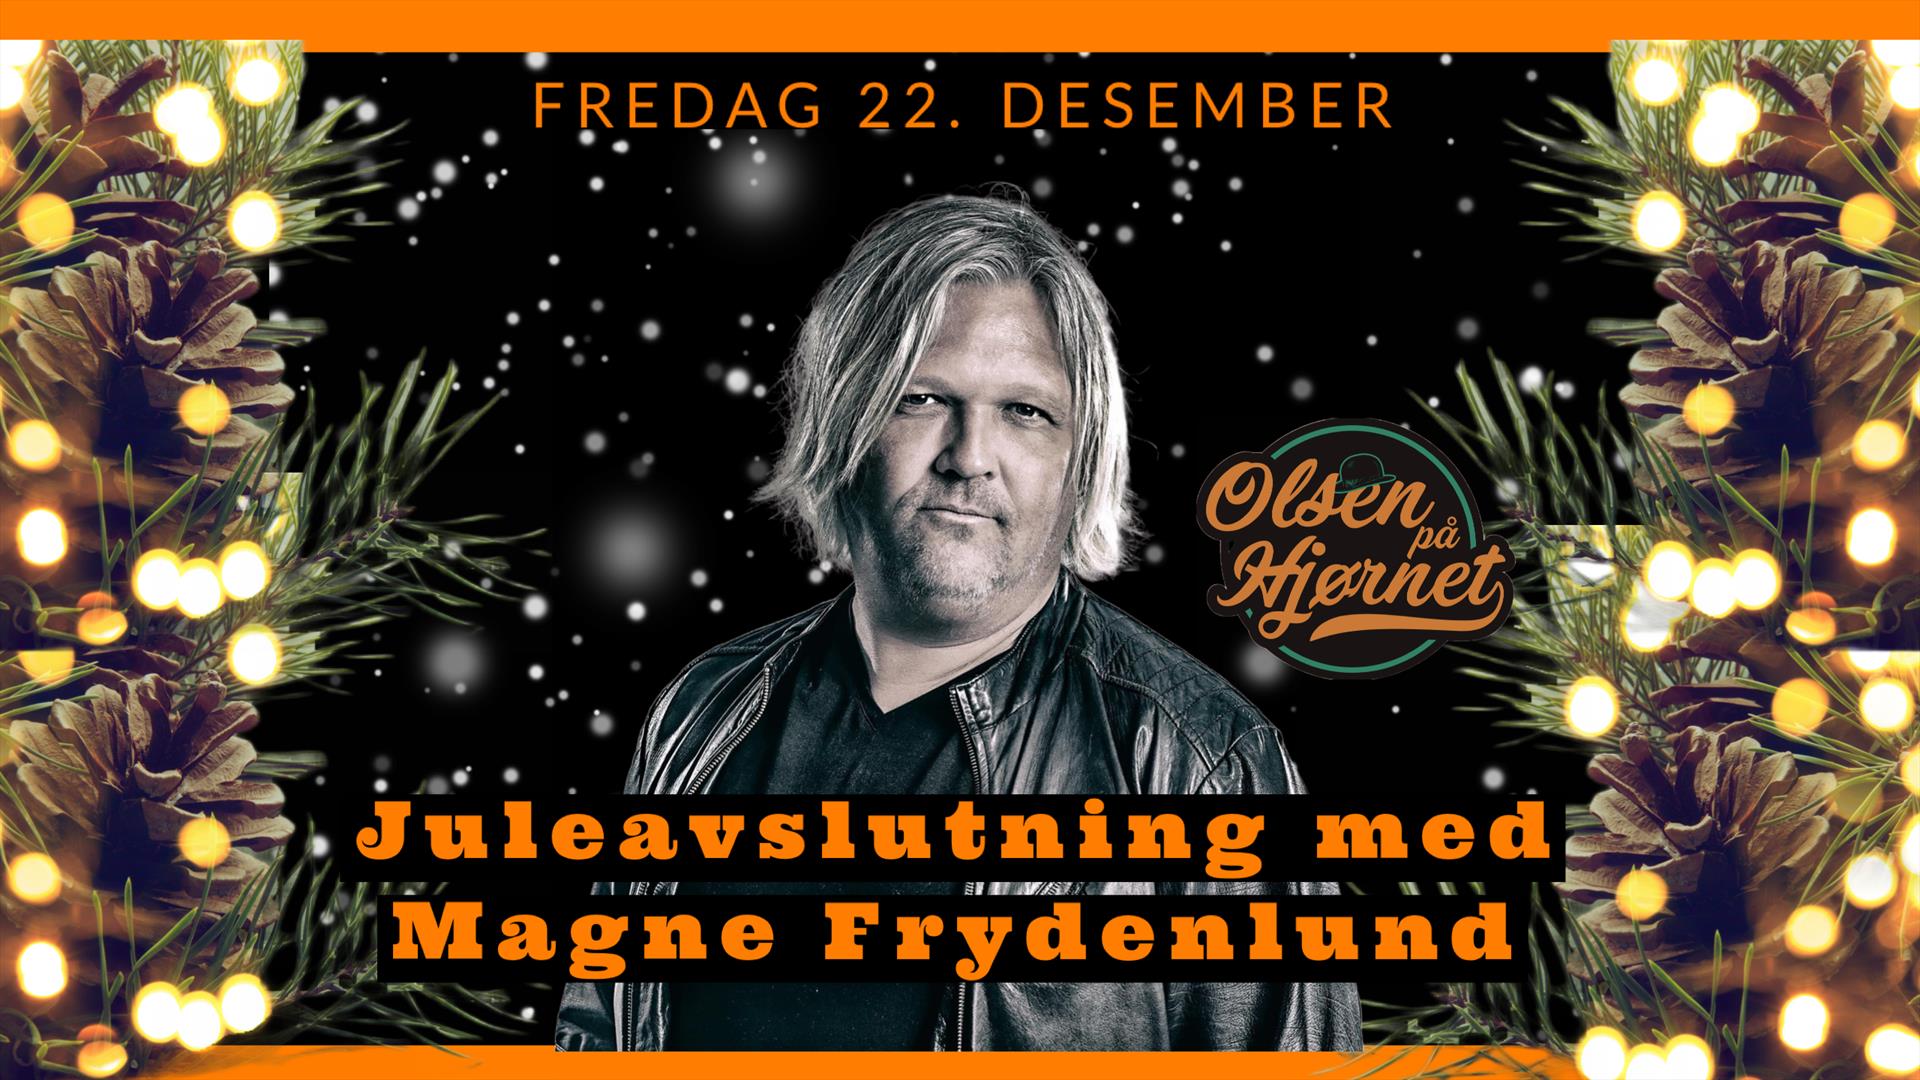 Magne Frydenlund